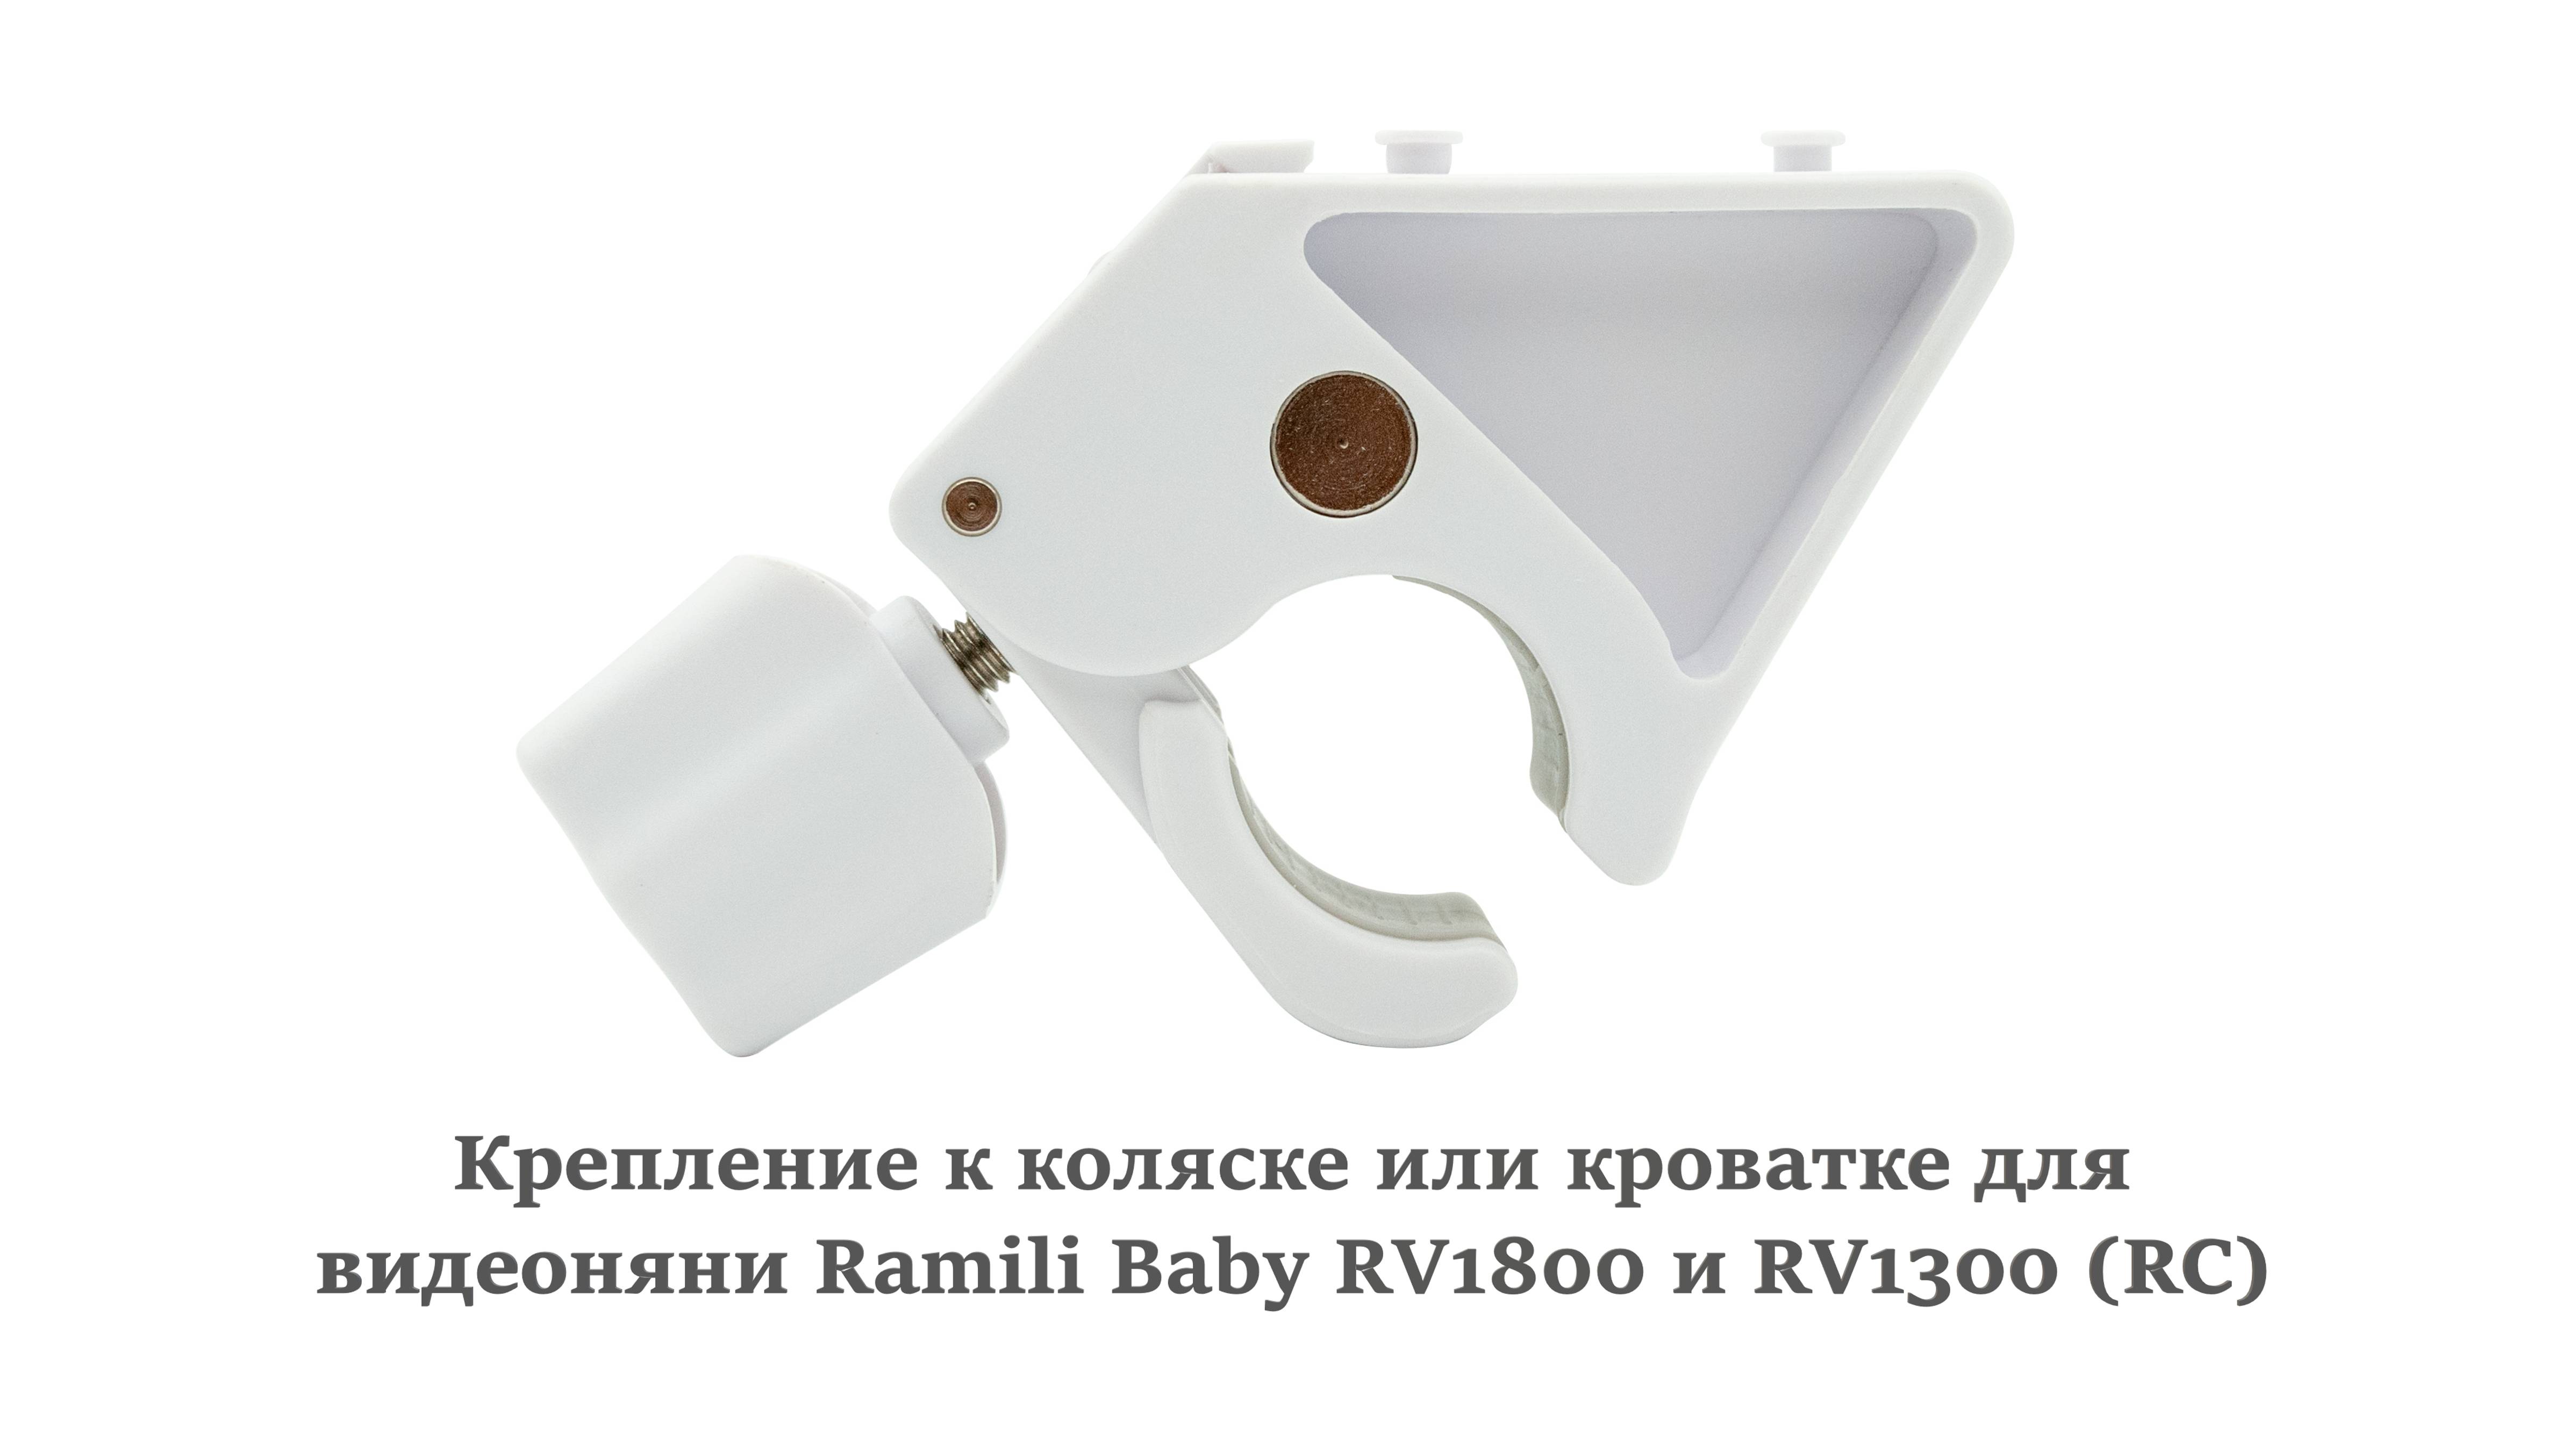 Обзор на крепление к коляске или кроватке для видеоняни Ramili Baby RV1800 и RV1300 (RC)